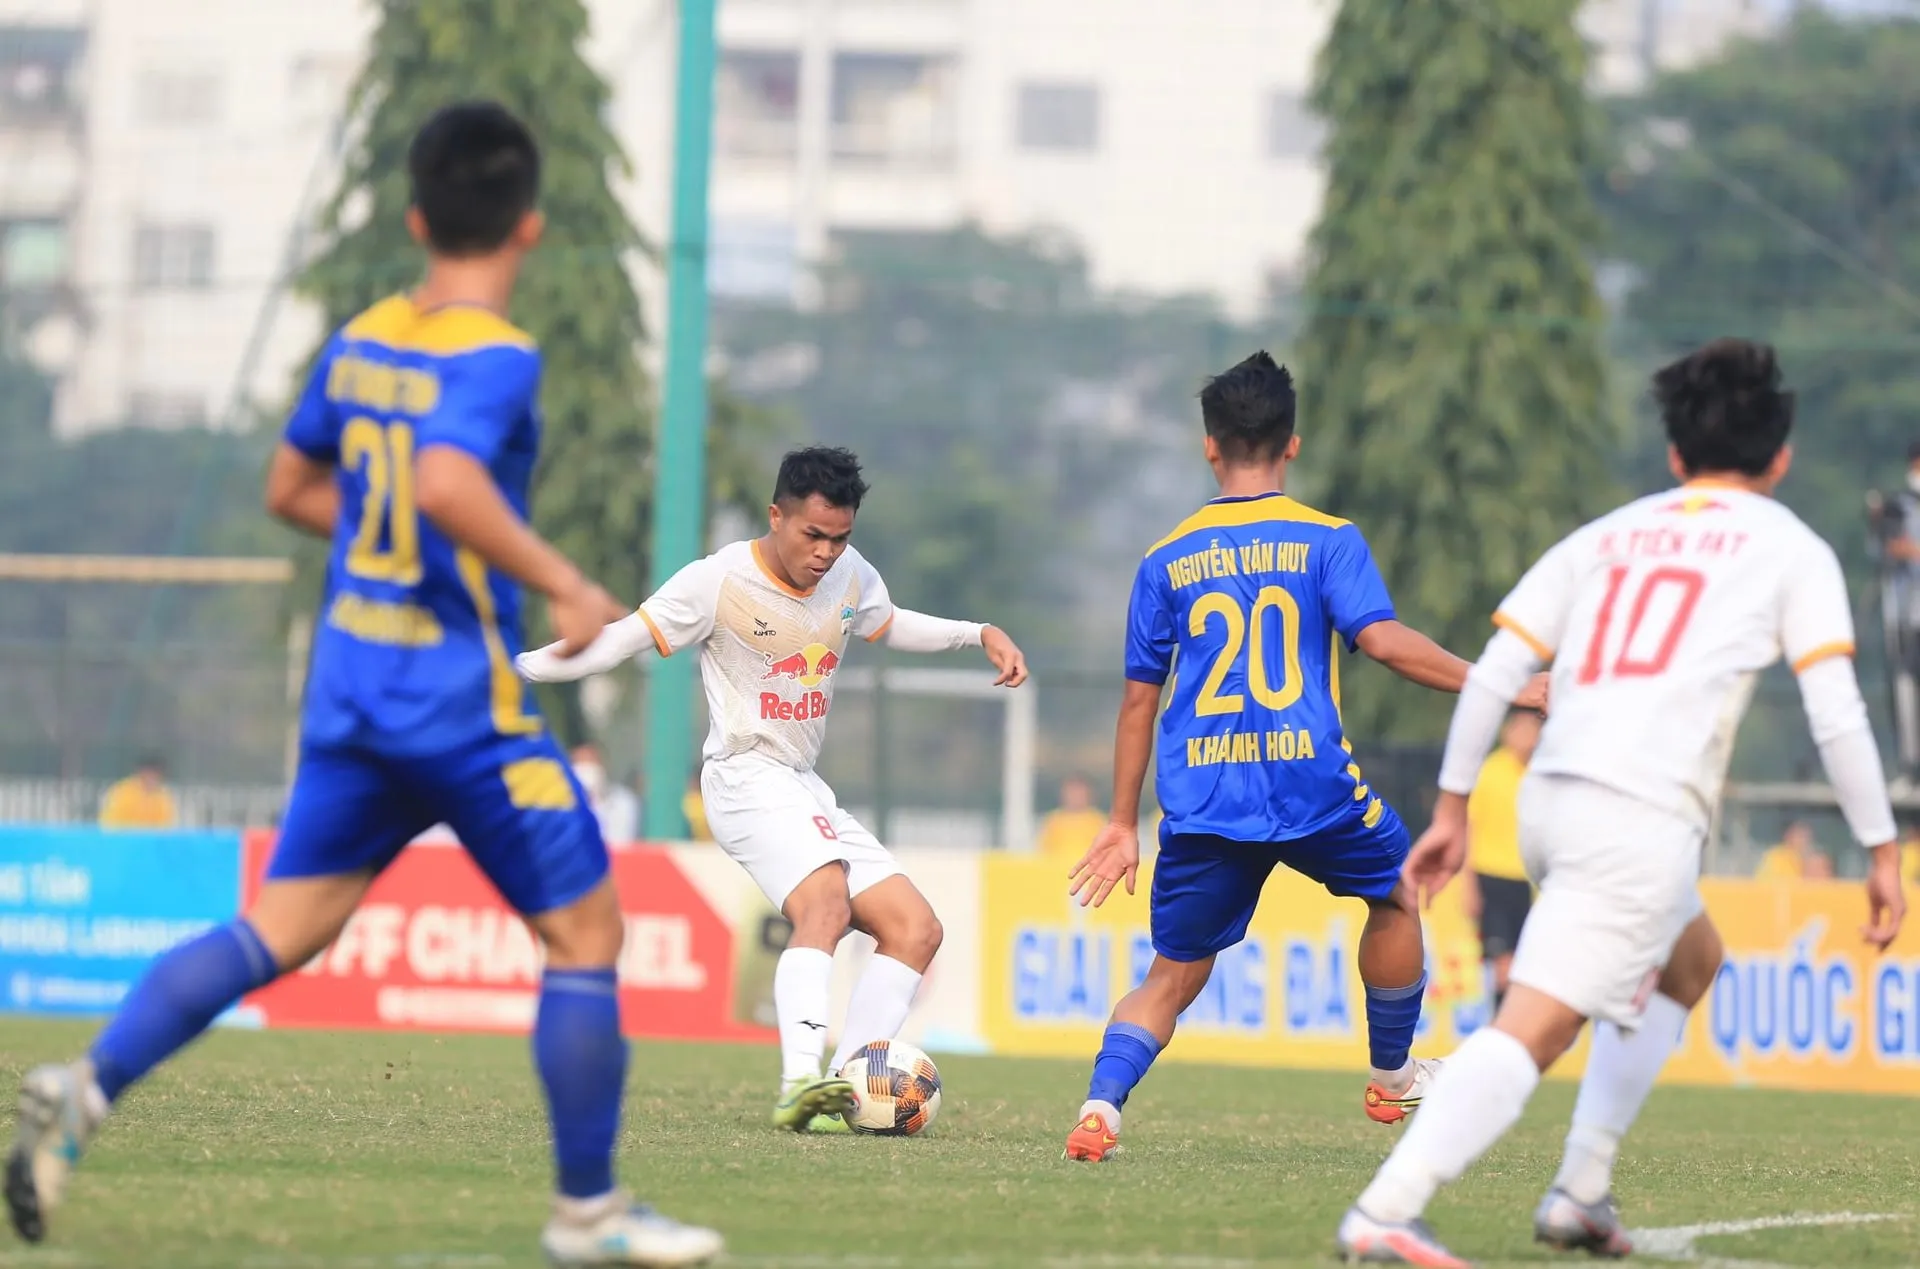 Việt Nam chỉ có 3 suất dự giải đấu châu lục - Cầu thủ TPHCM dương tính Covid